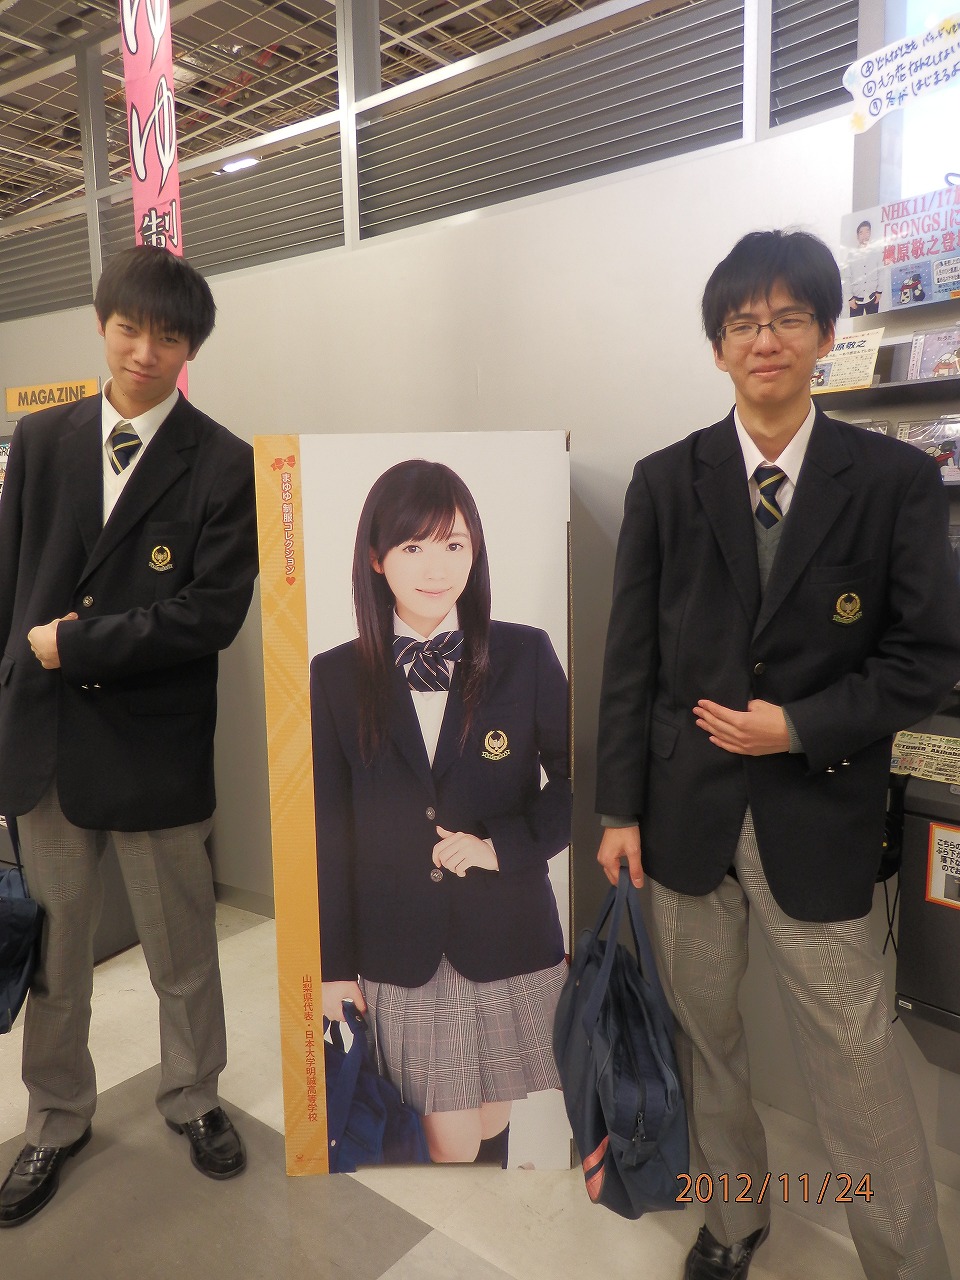 日大明誠 Nu祭閉会式に参加しました 日本大学明誠高等学校 学校公式ブログ エデュログ